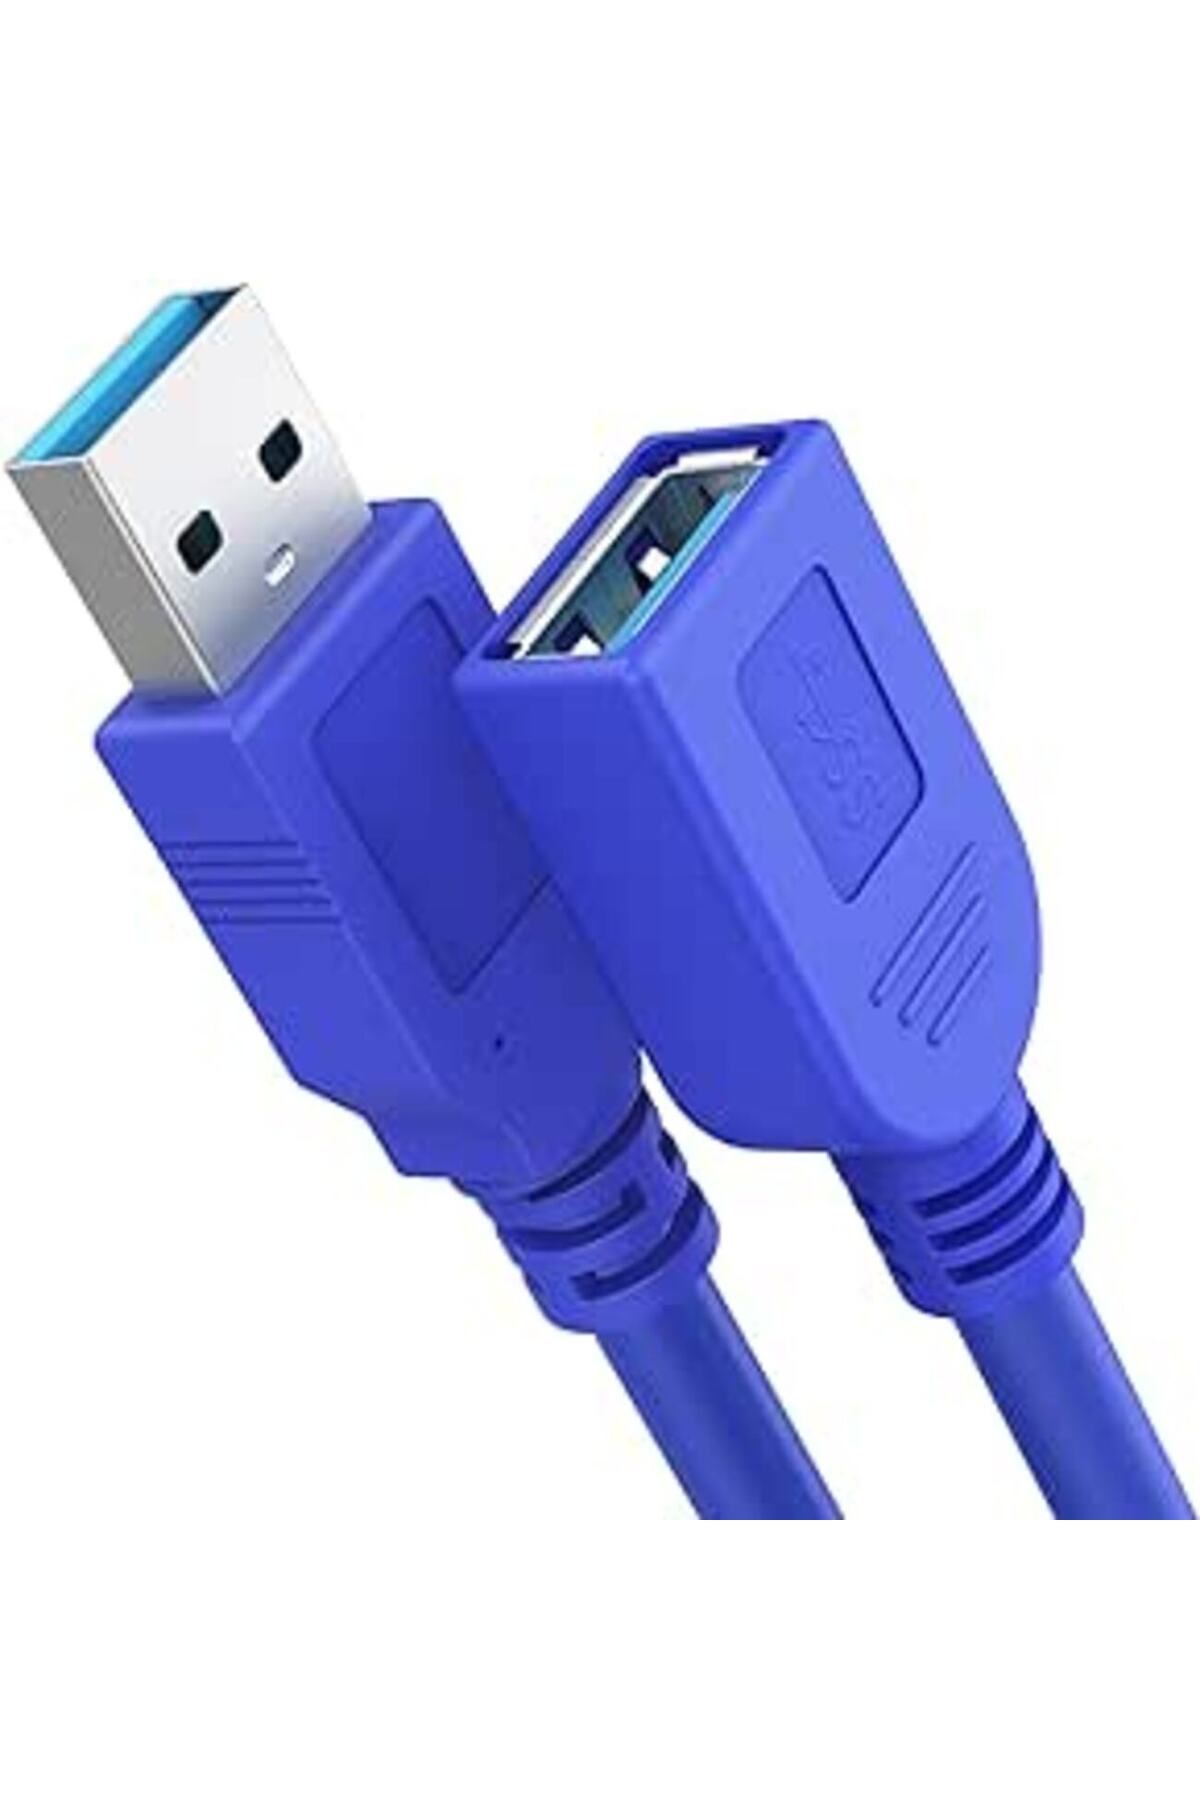 Concord C-596 USB 3.0 Erkek Erkek Ara Bağlantı Kablosu Uzatma Ekleme 50 cm